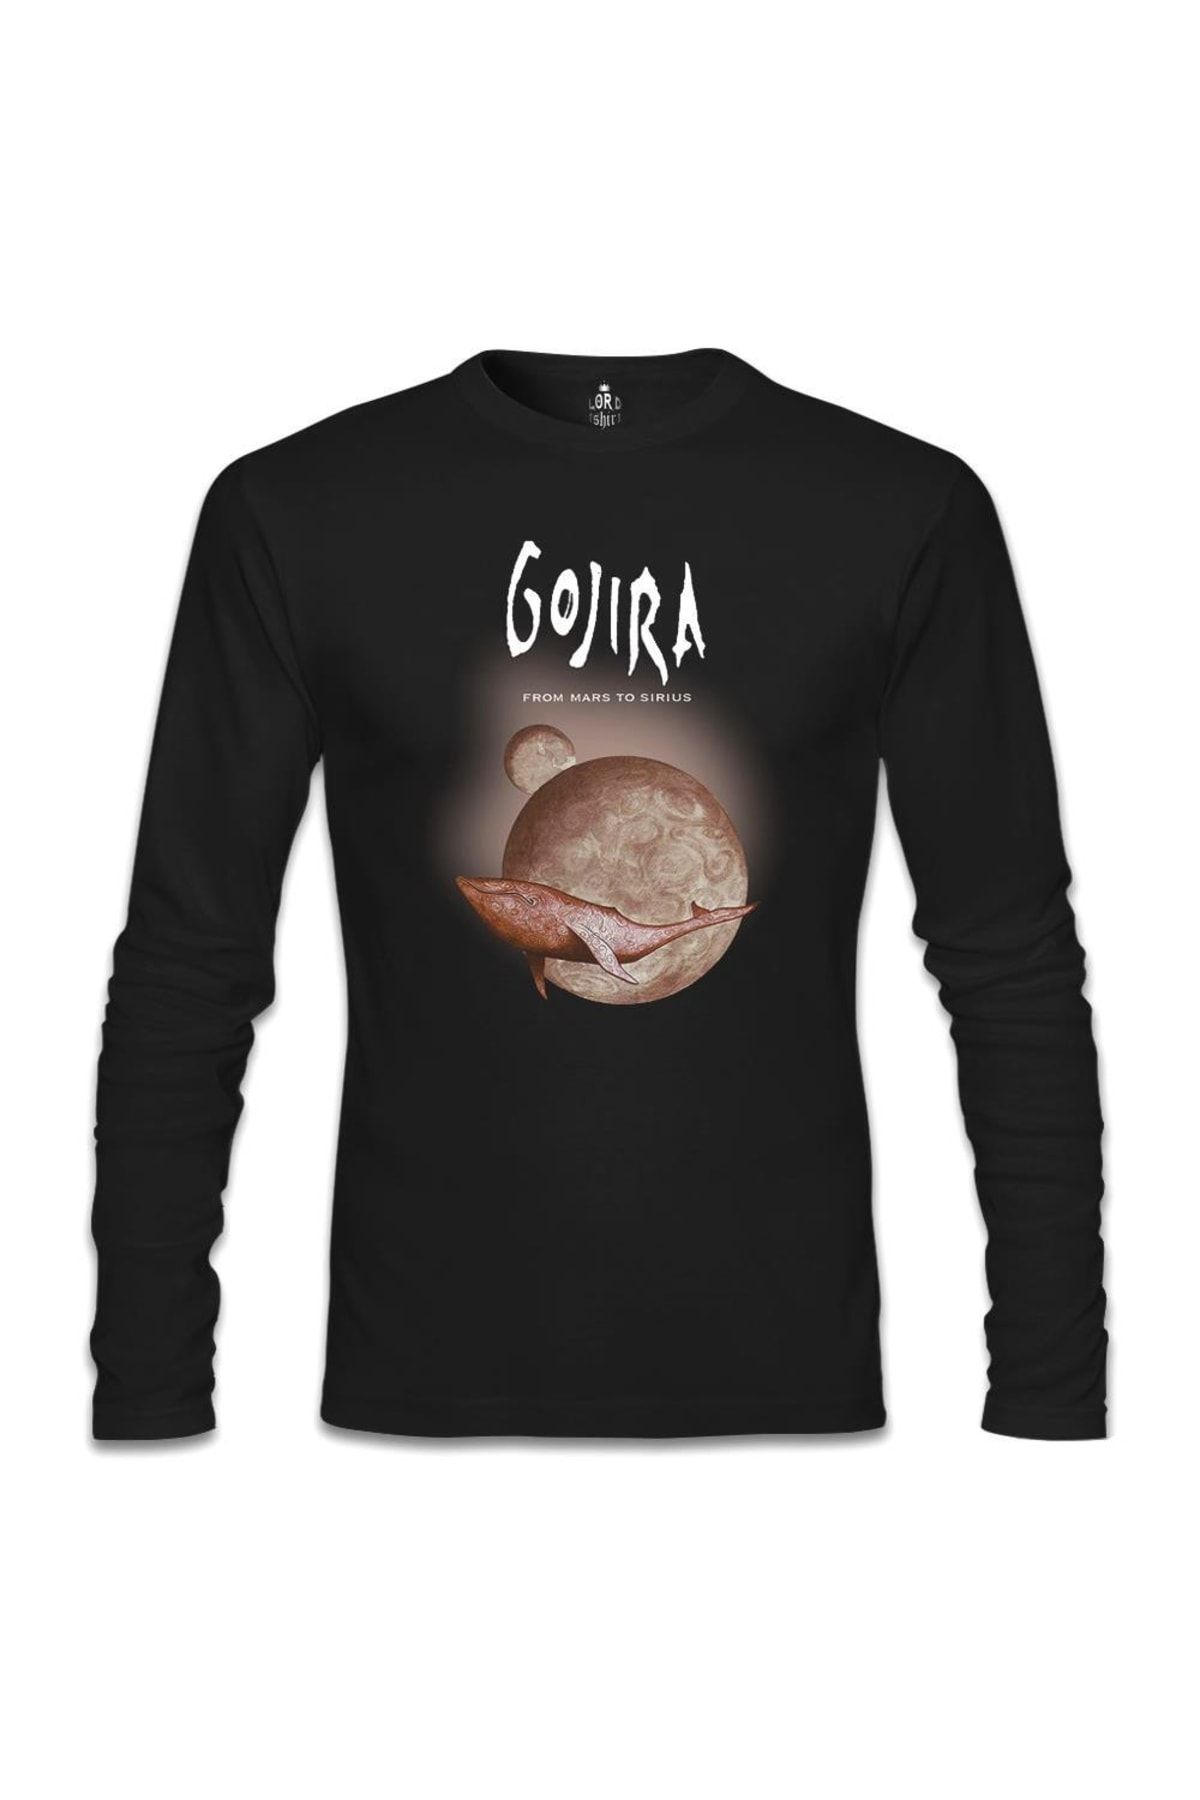 Lord T-Shirt Gojira - From Mars To Sirius Siyah Erkek Sweatshirt